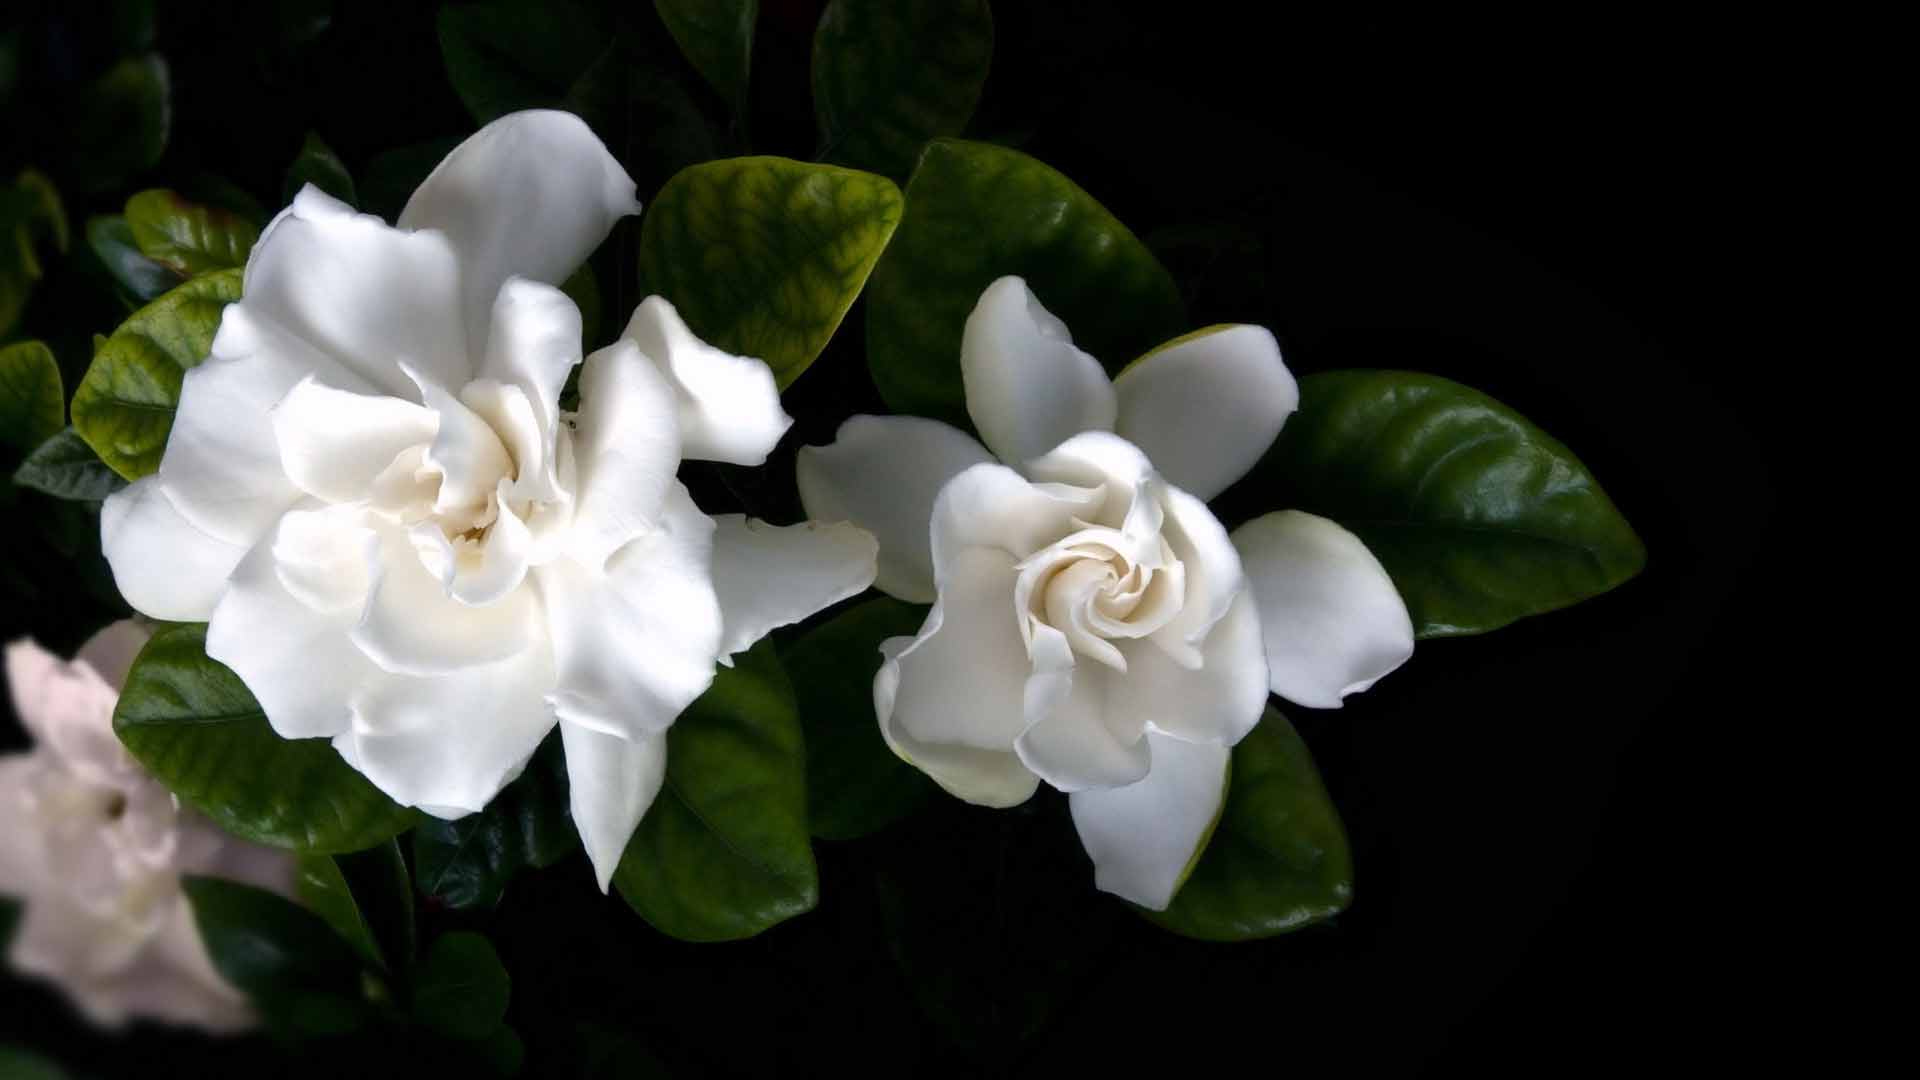 gardenia wallpaper,flower,gardenia,flowering plant,white,petal